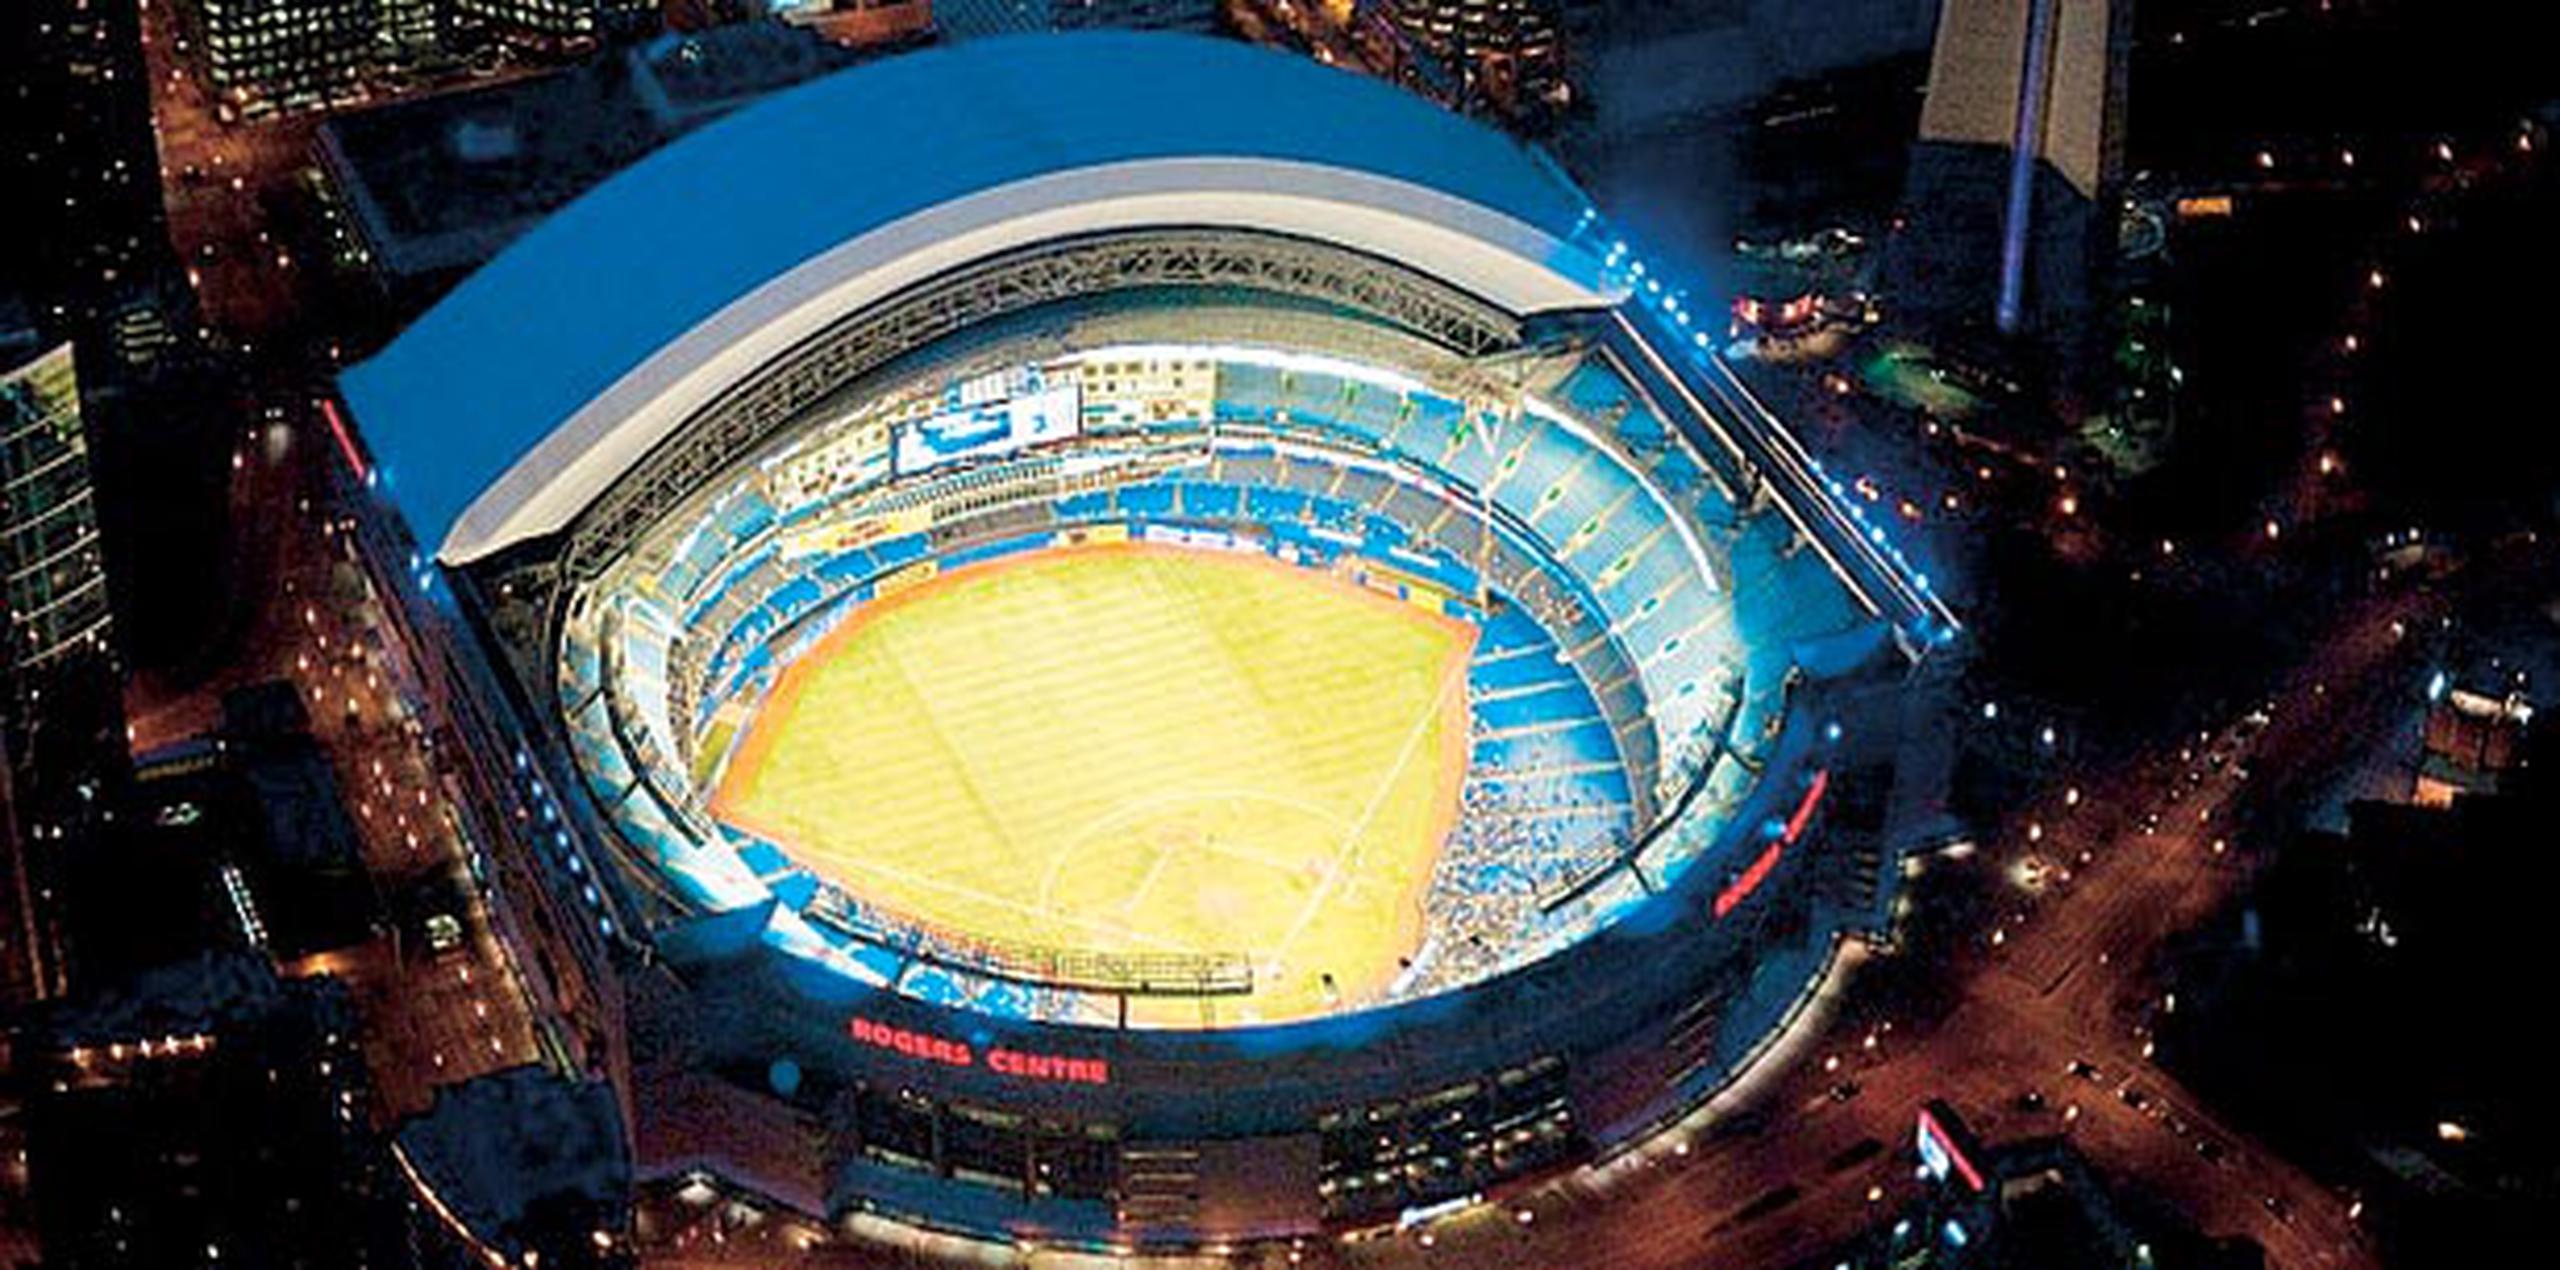 Por primera vez en la historia, las ceremonias de apertura y clausura se realizarán en un estadio -el Rogers Centre- con techo retráctil. (Wikimedia Commons)